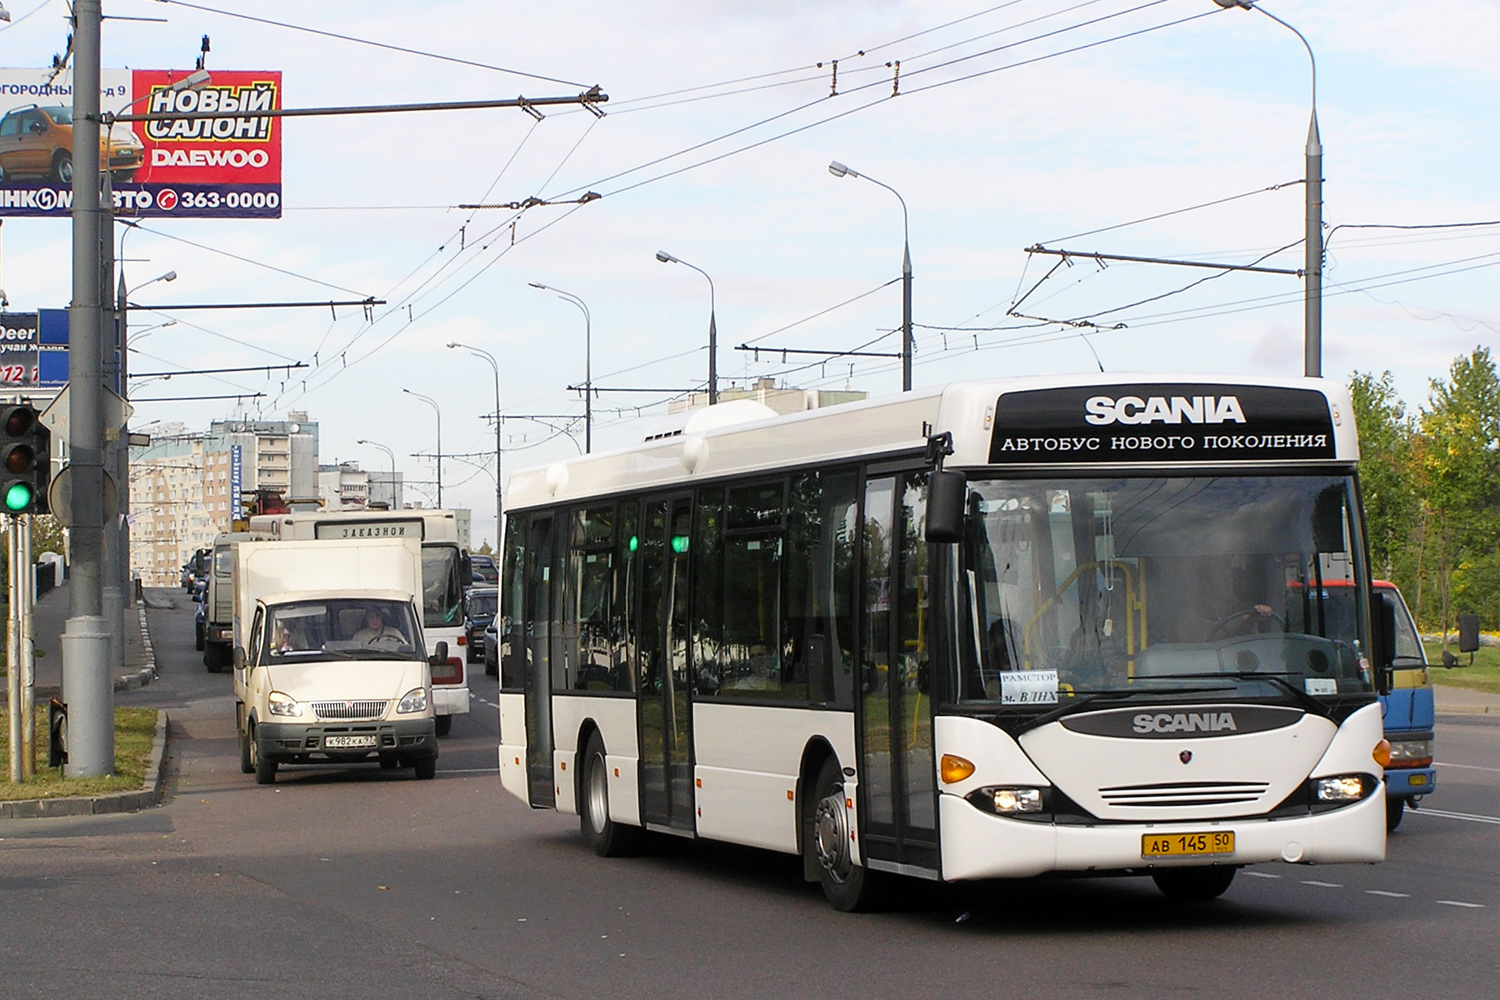 Московская область, Scania OmniLink I (Скания-Питер) № АВ 145 50